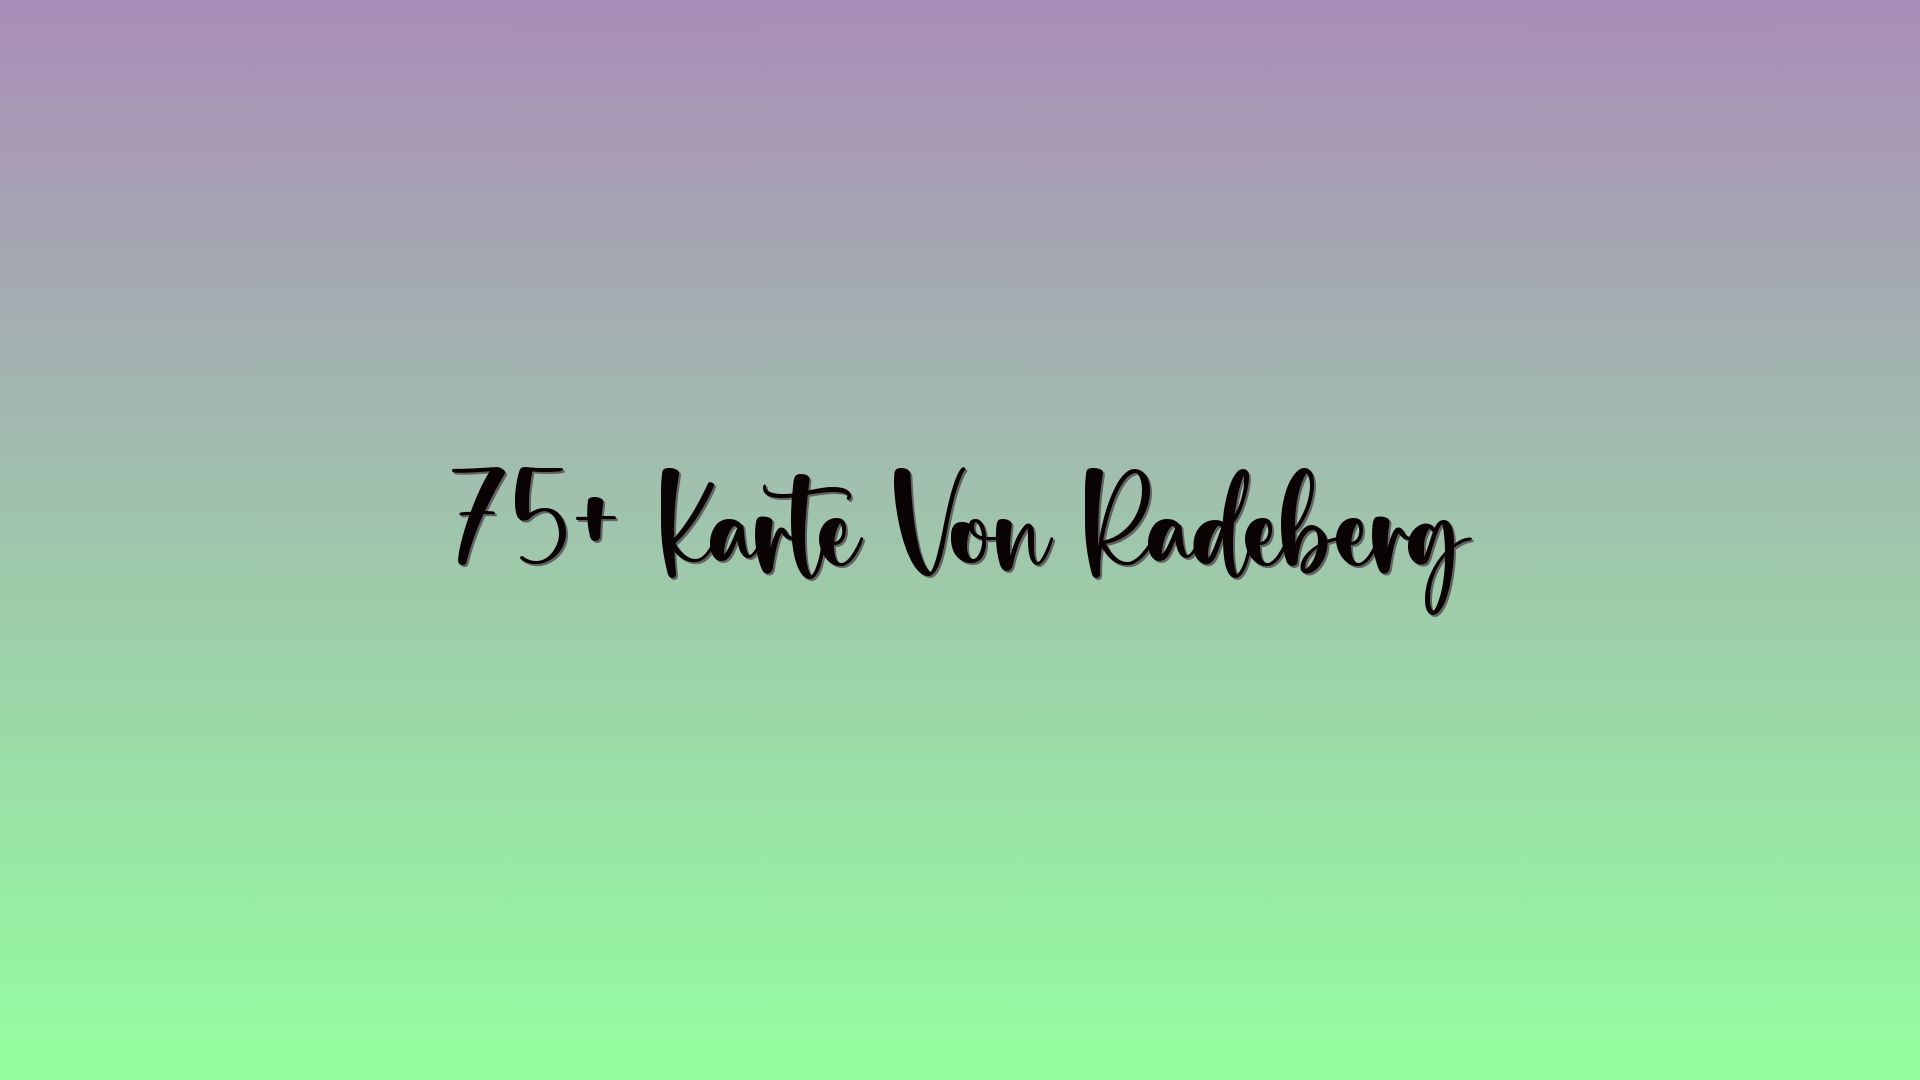 75+ Karte Von Radeberg